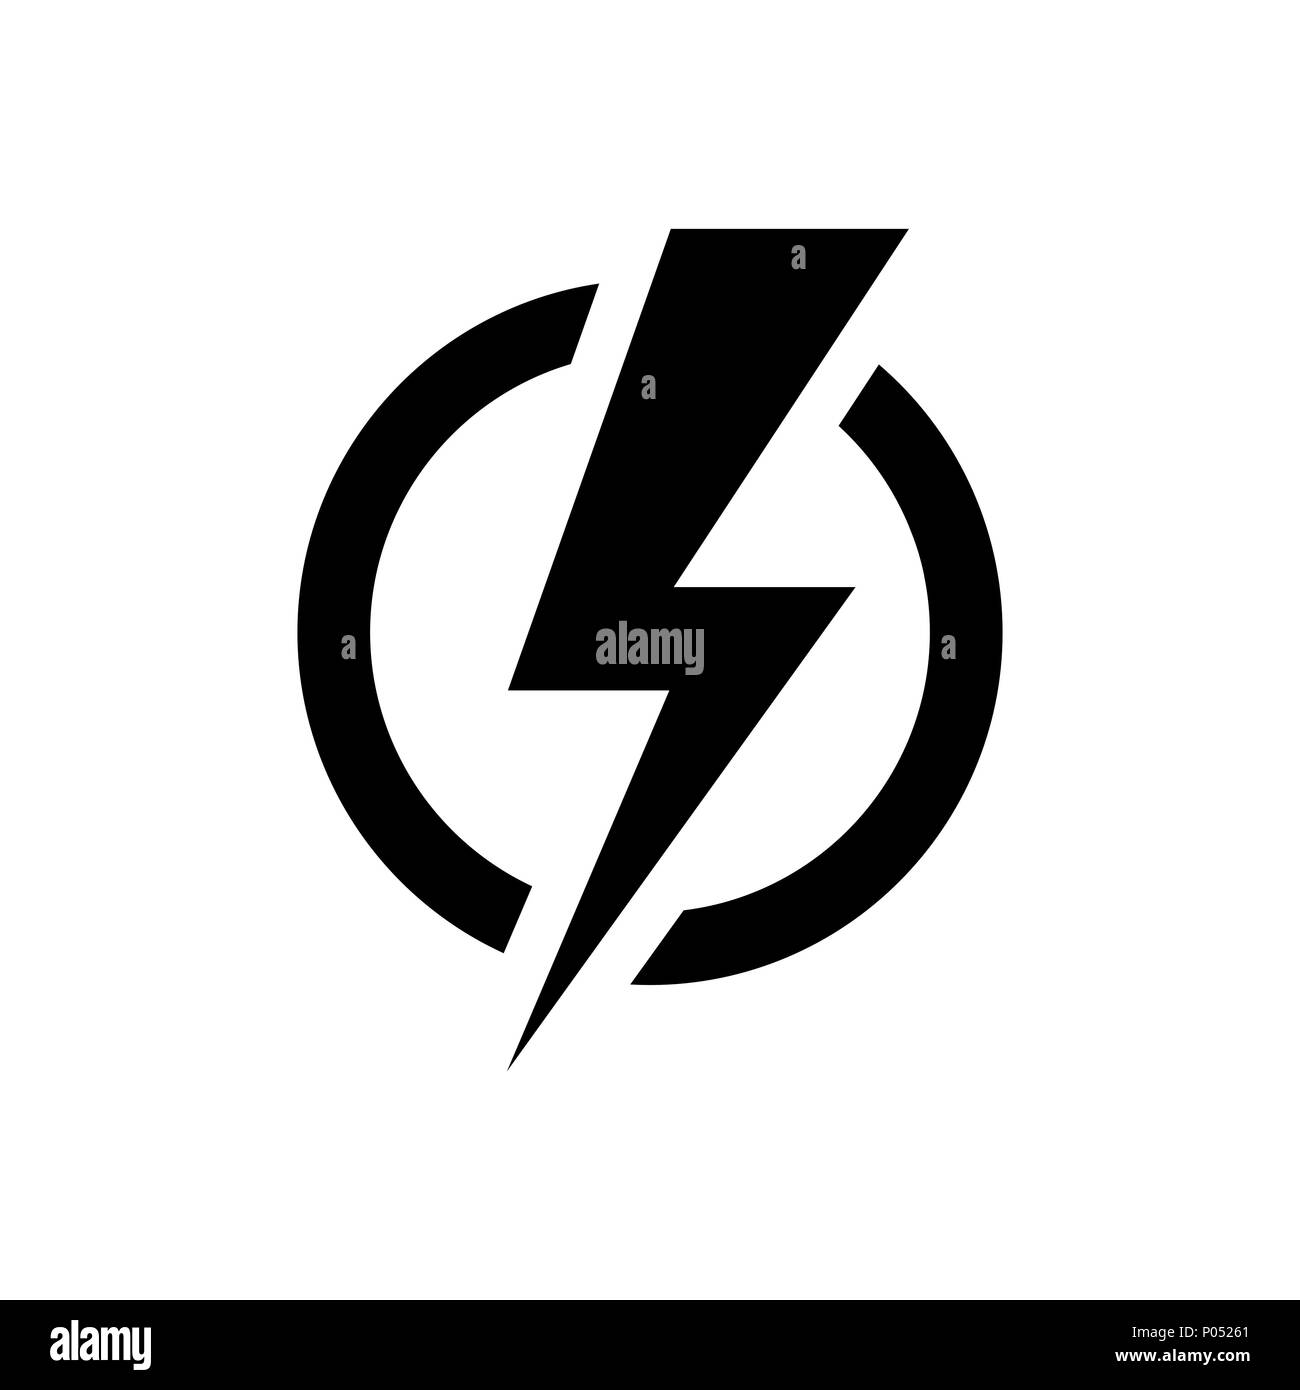 Power symbol Banque de photographies et d'images à haute résolution - Alamy